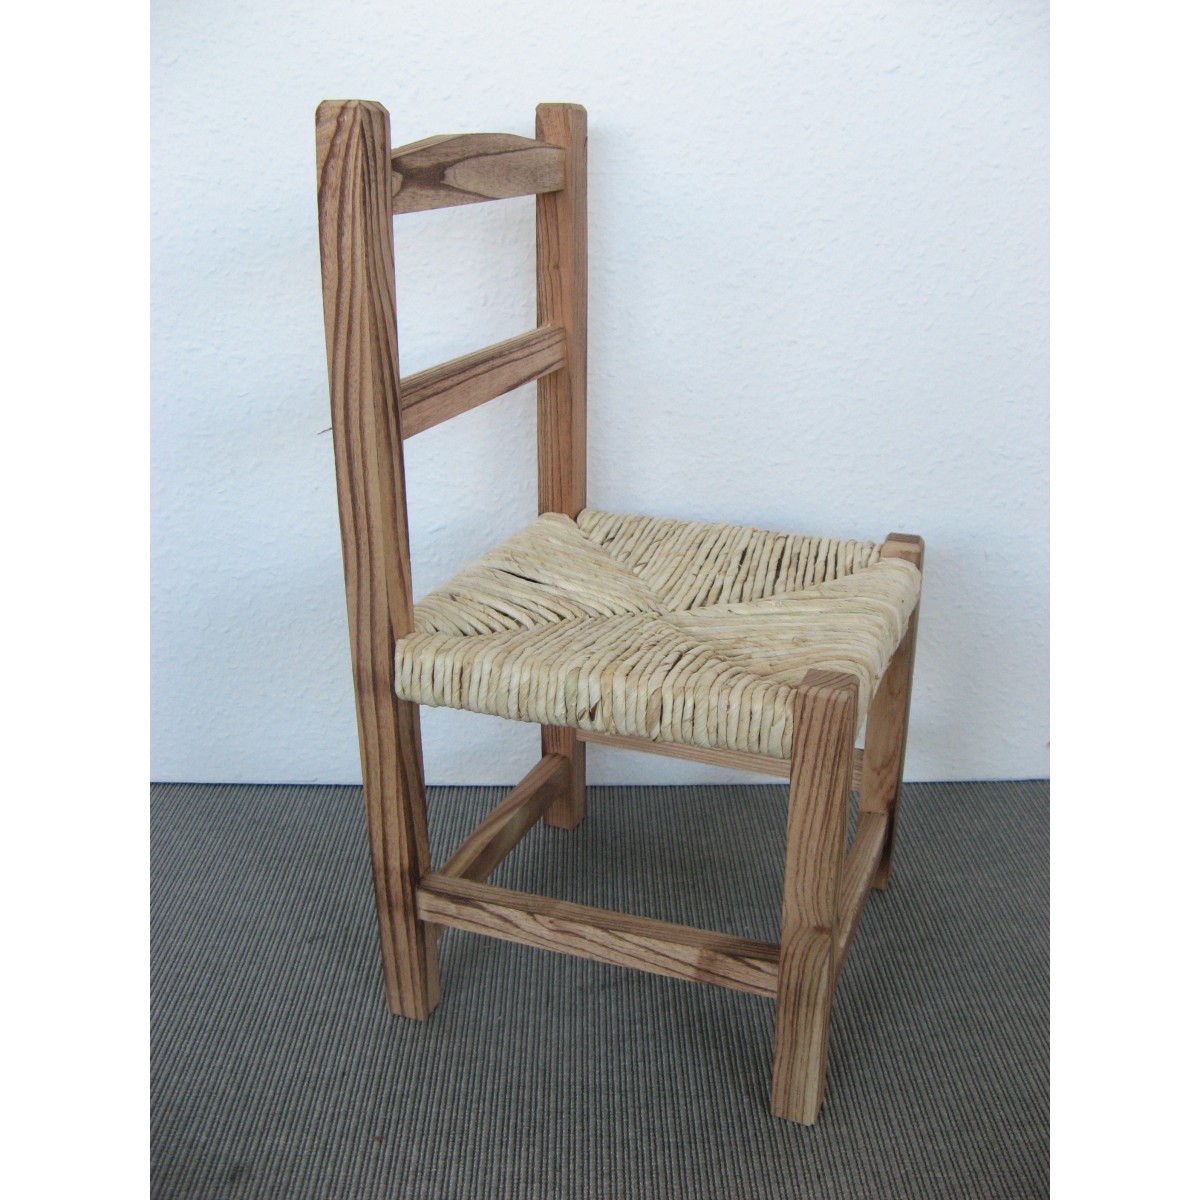 Petite chaise pour enfant avec assise en paille en bois naturel